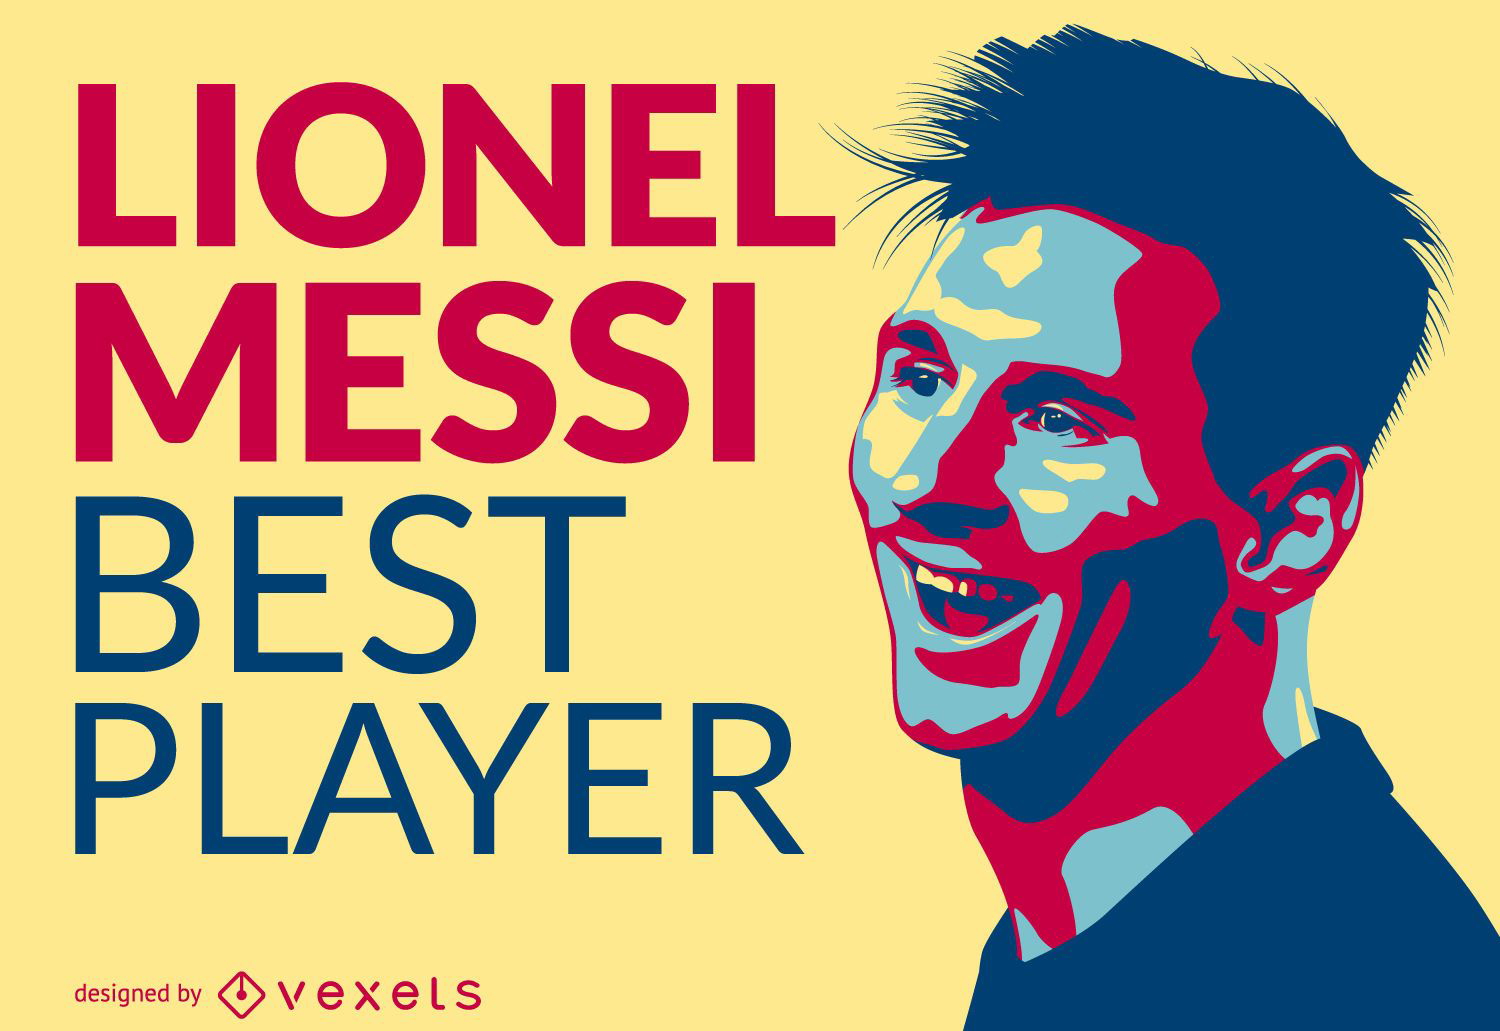 Ilustra??o do melhor jogador de Lionel Messi